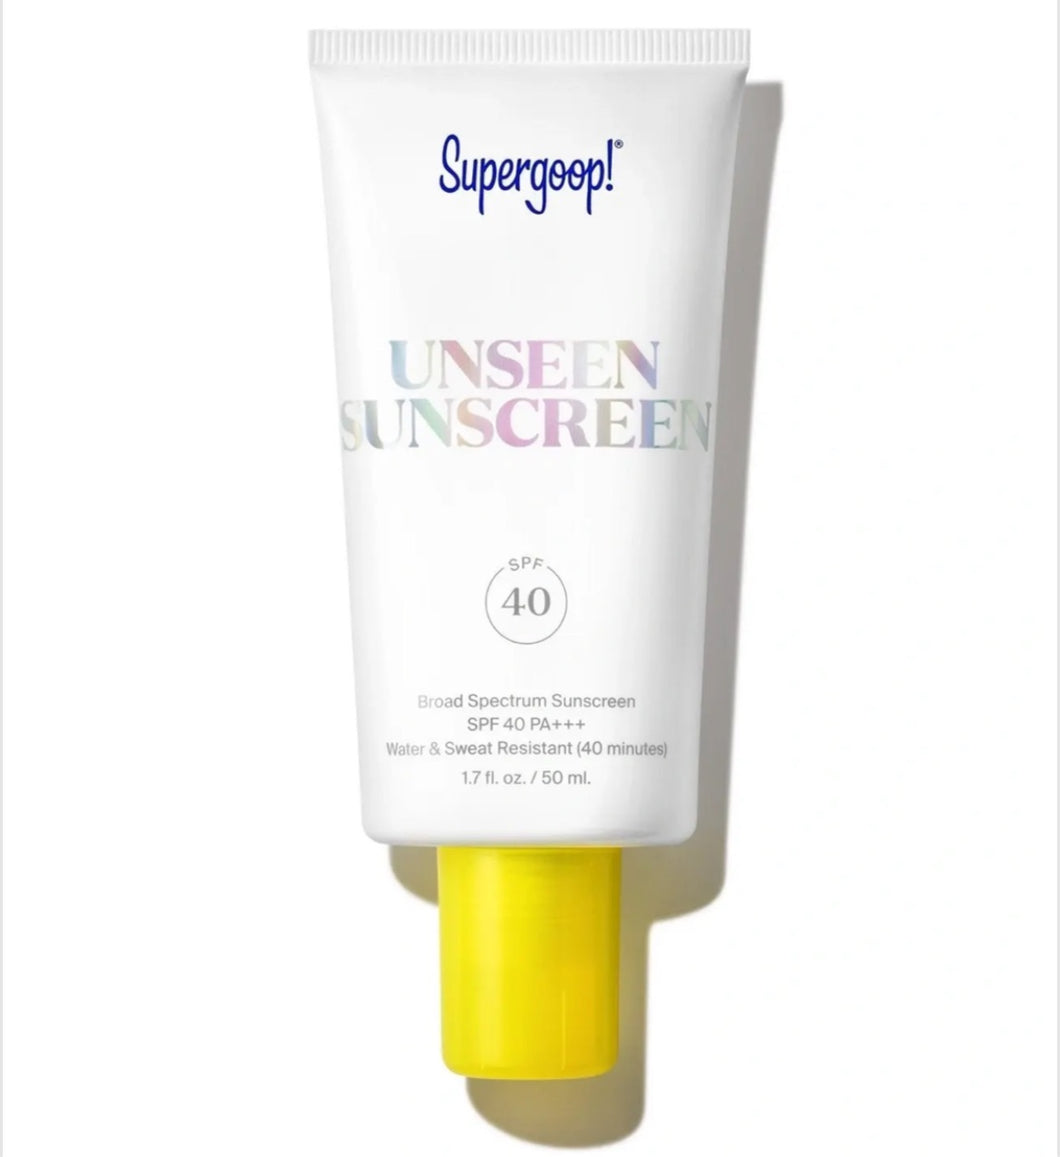 Unseen Sunscreen by SuperGoop!